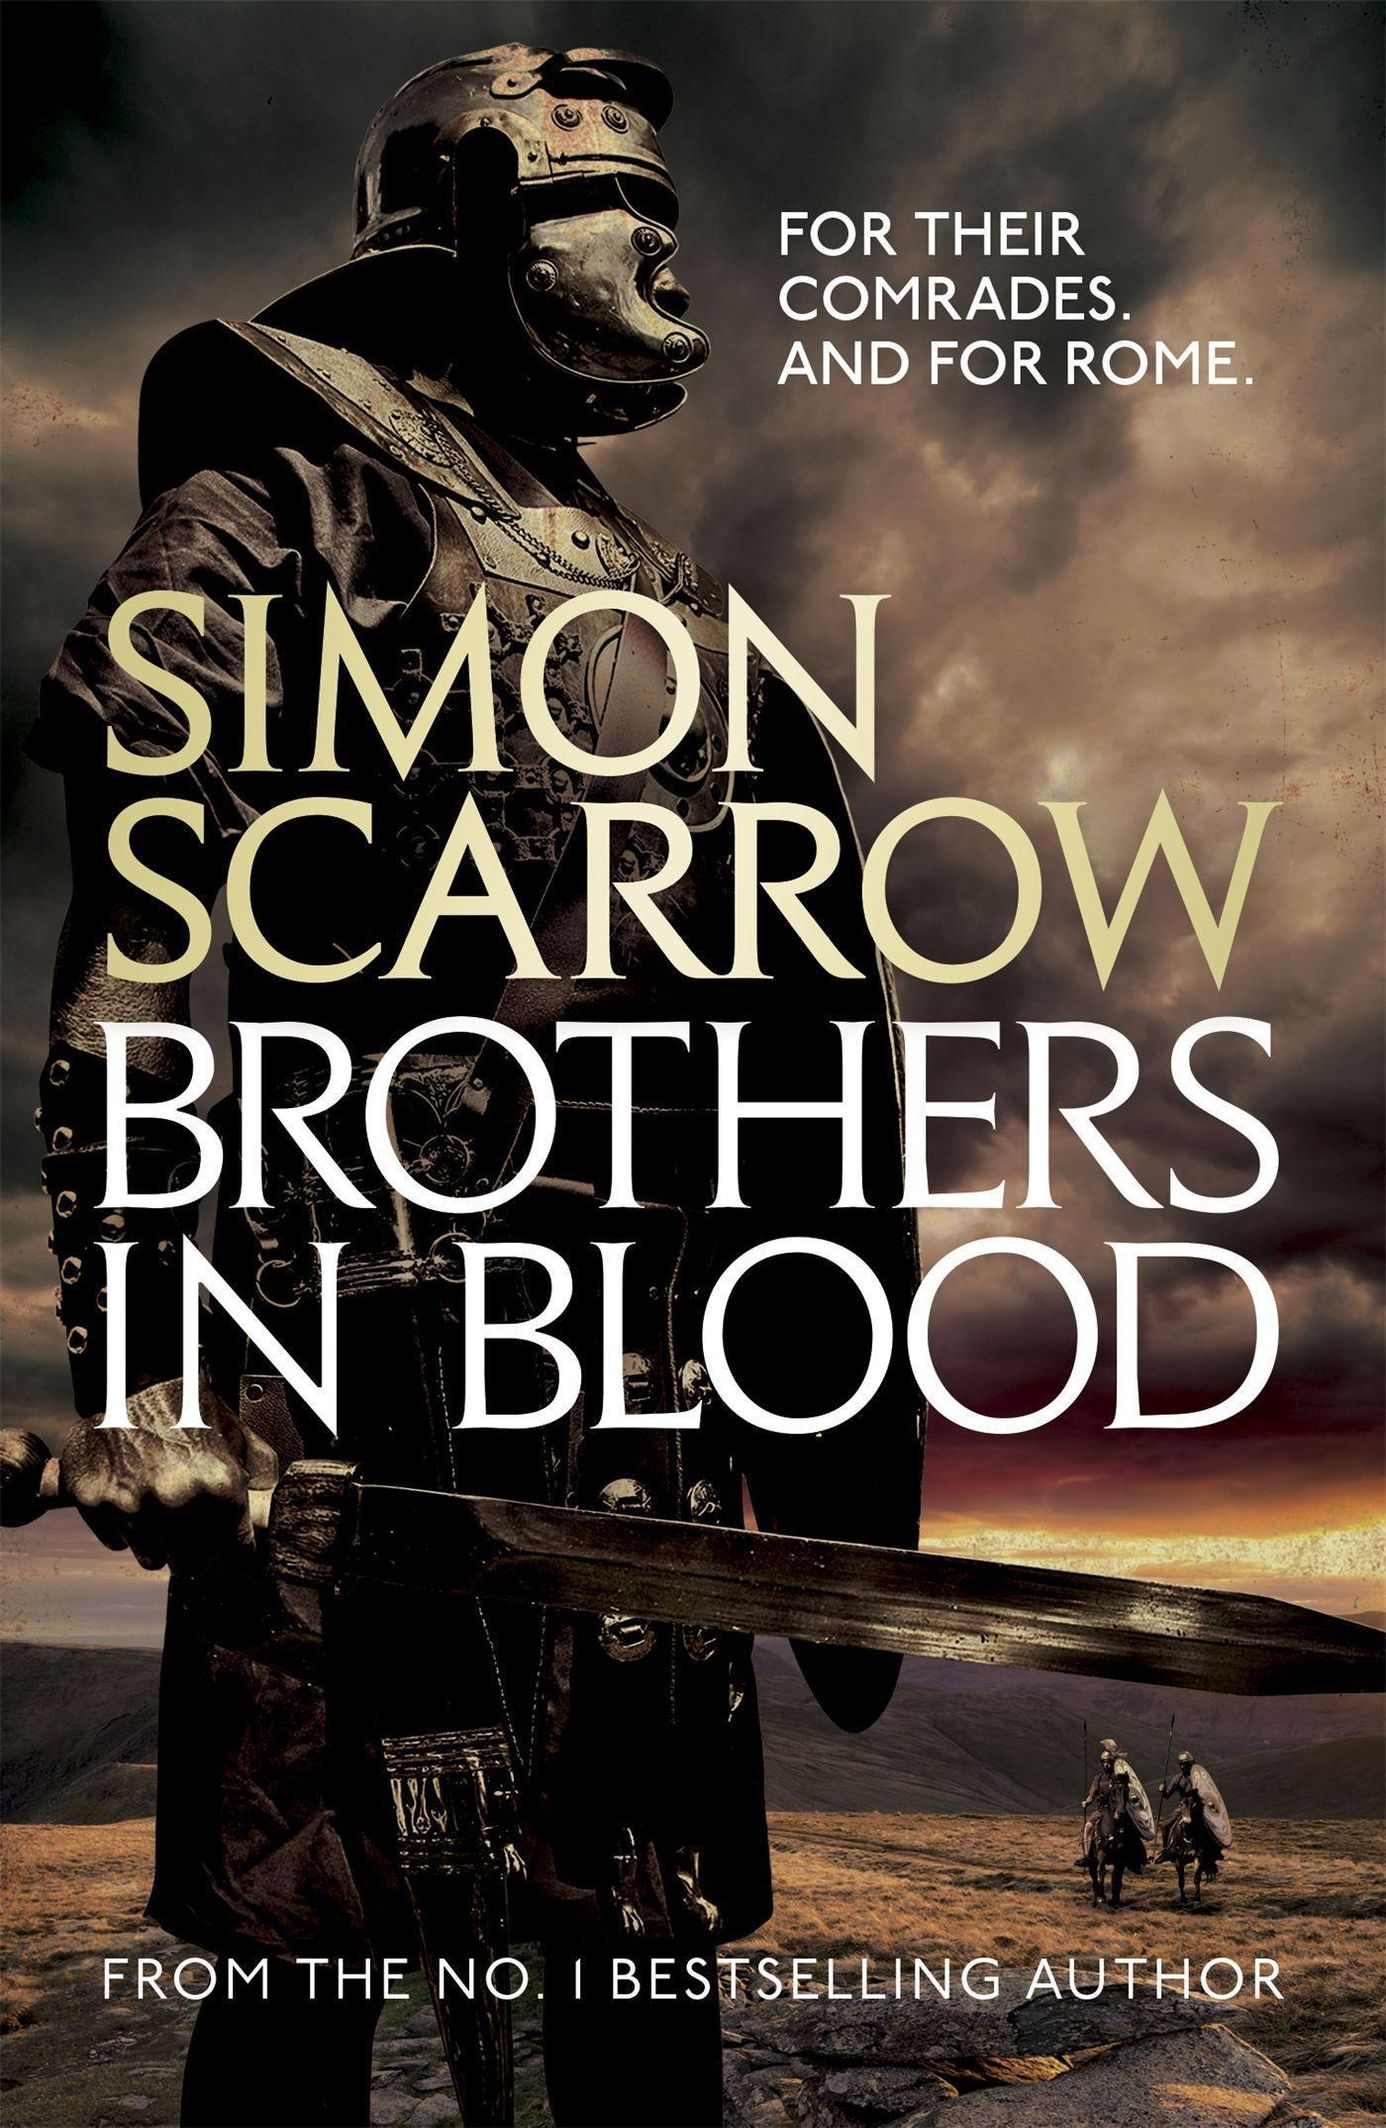 Warrior: The War Prince eBook by Simon Scarrow - EPUB Book